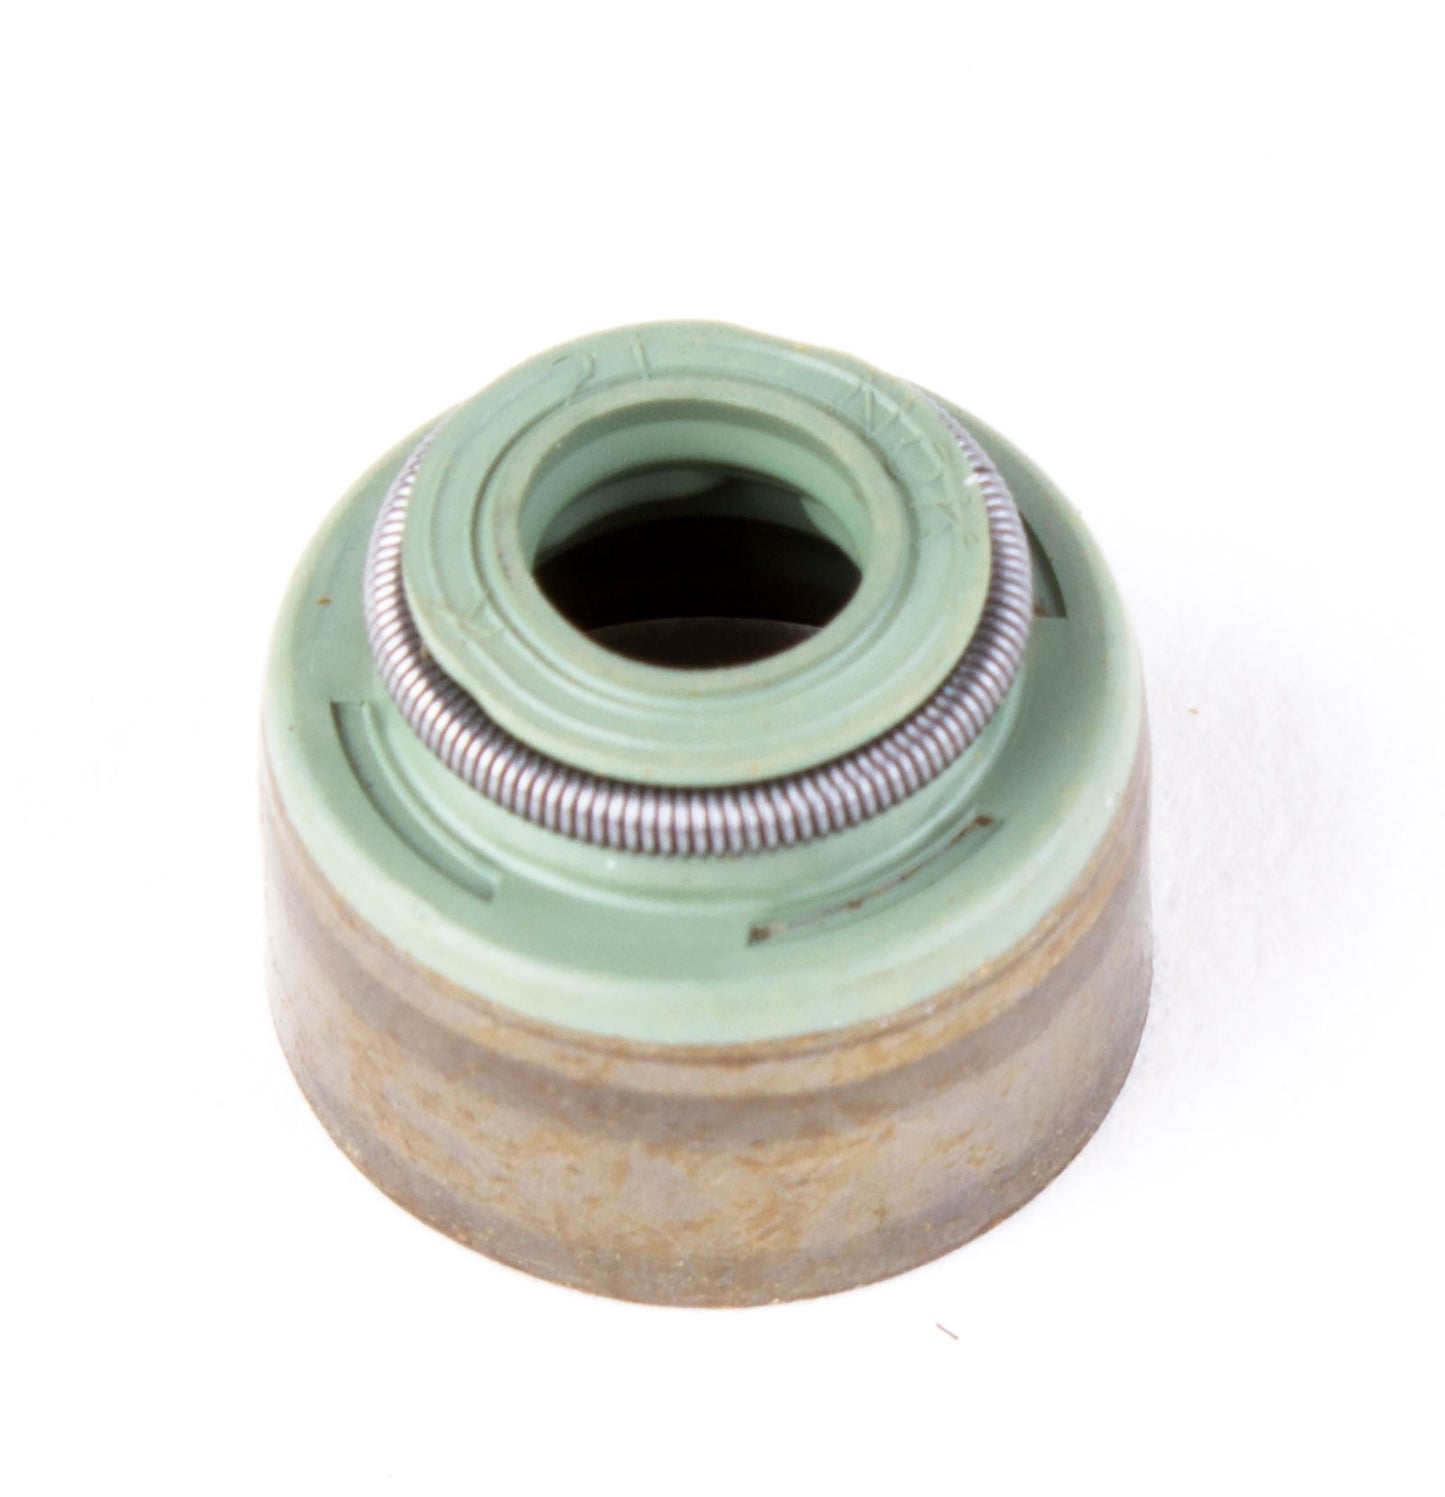 Exhaust/intake valve stem seal